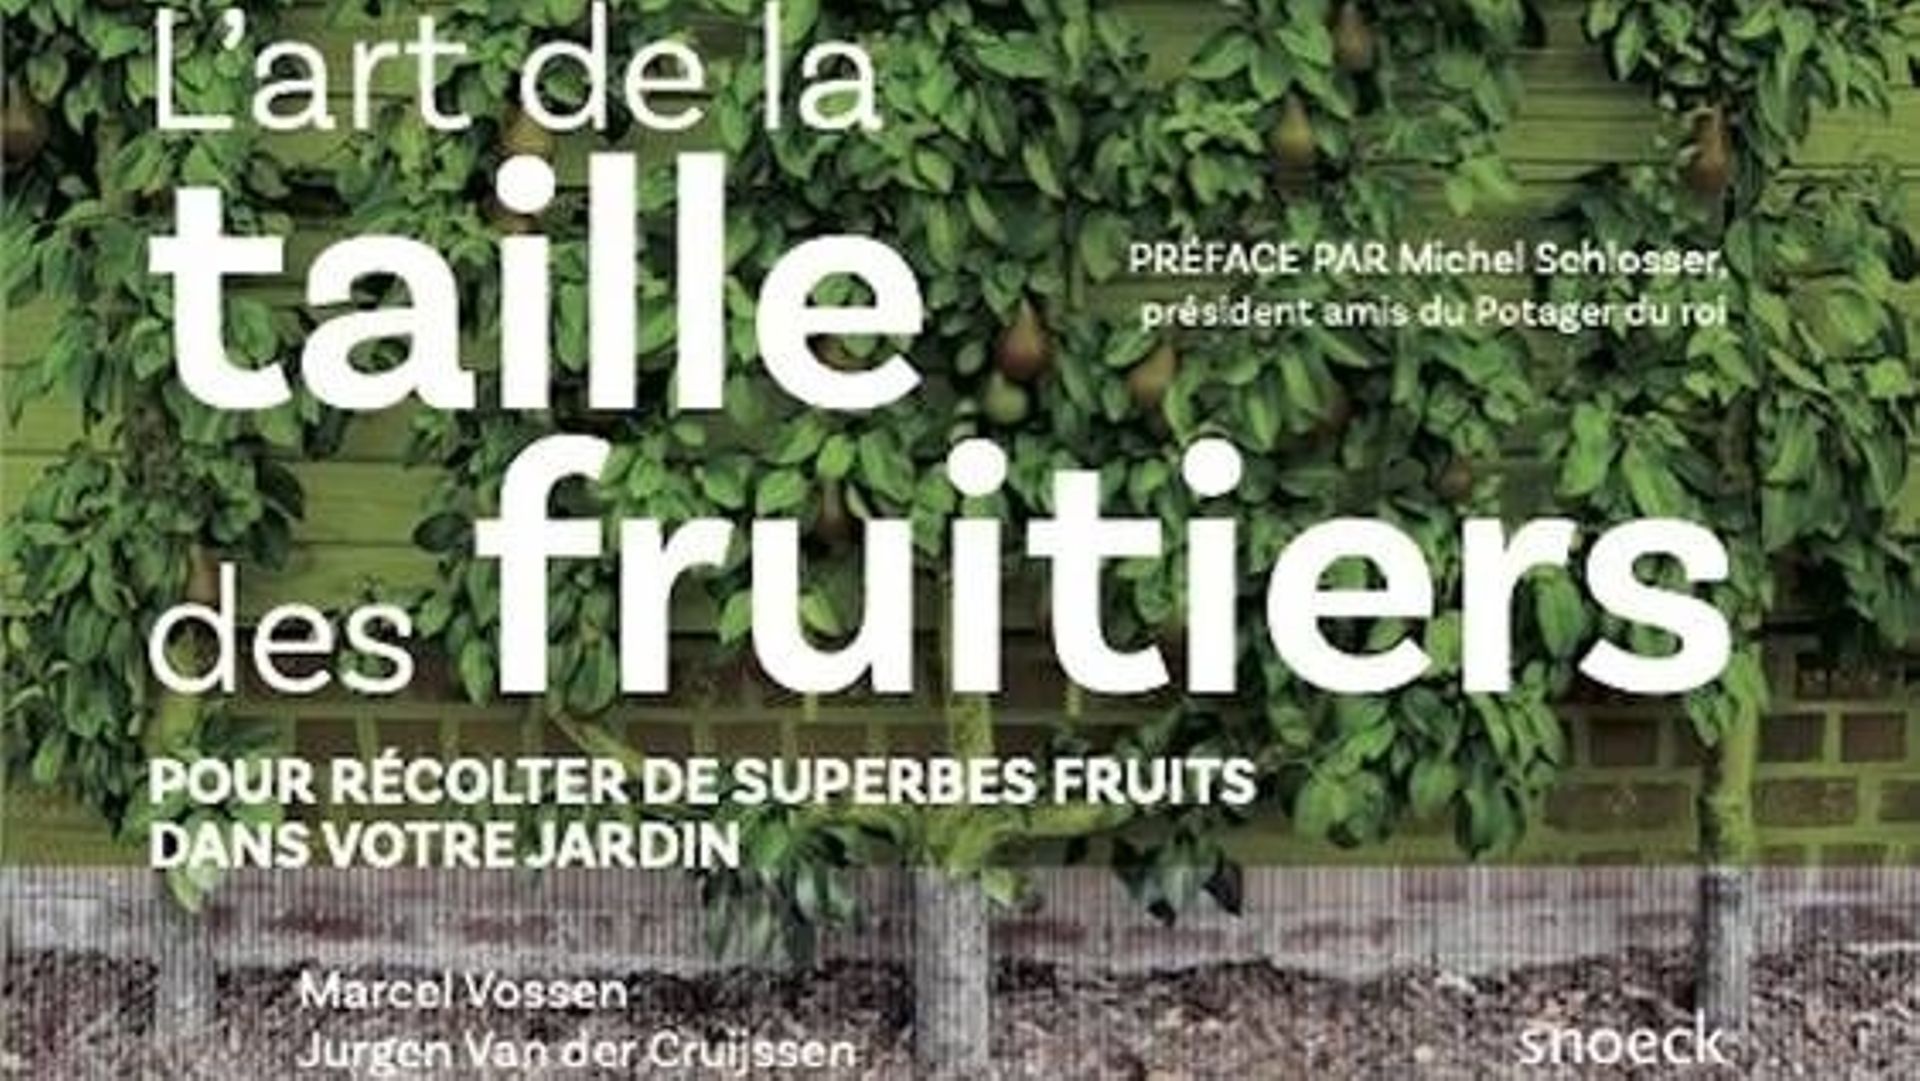 Livre "L'art de la taille des fruitiers" de Marcel Vossen aux éditions Snoeck